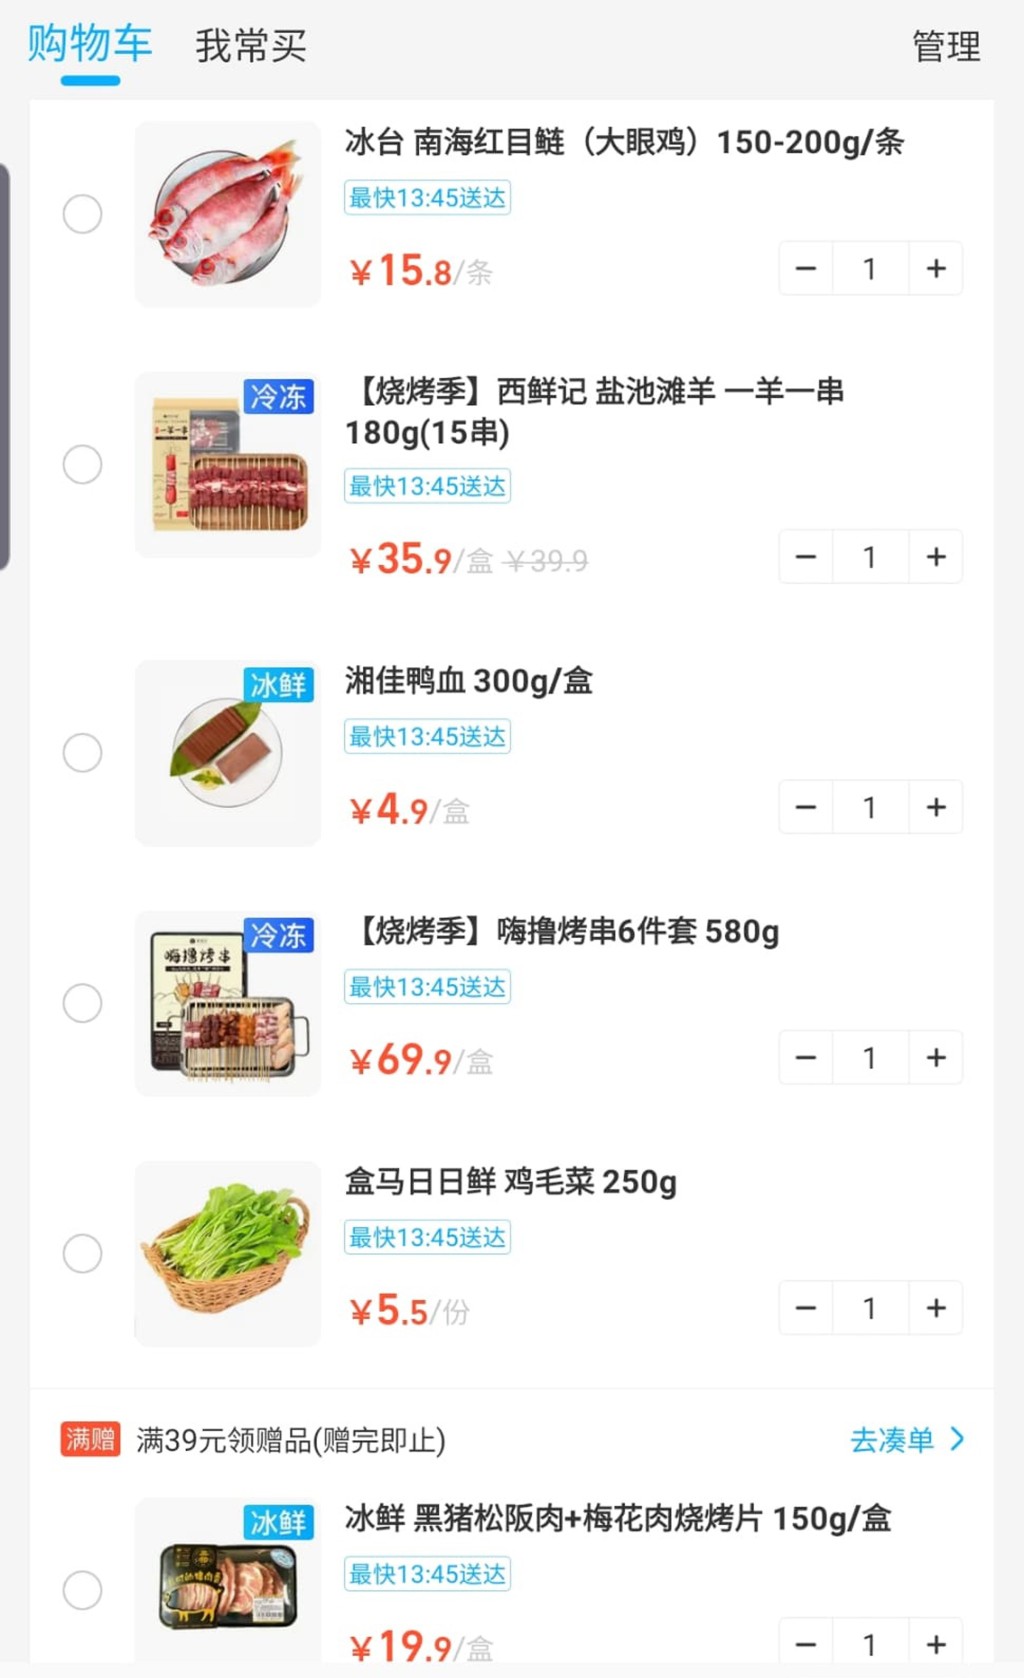 物流公司稱港客可在深圳超市APP瀏覽，將打算購買貨品加入「購物車」及截圖發給他，便可代購及直送香港府上。